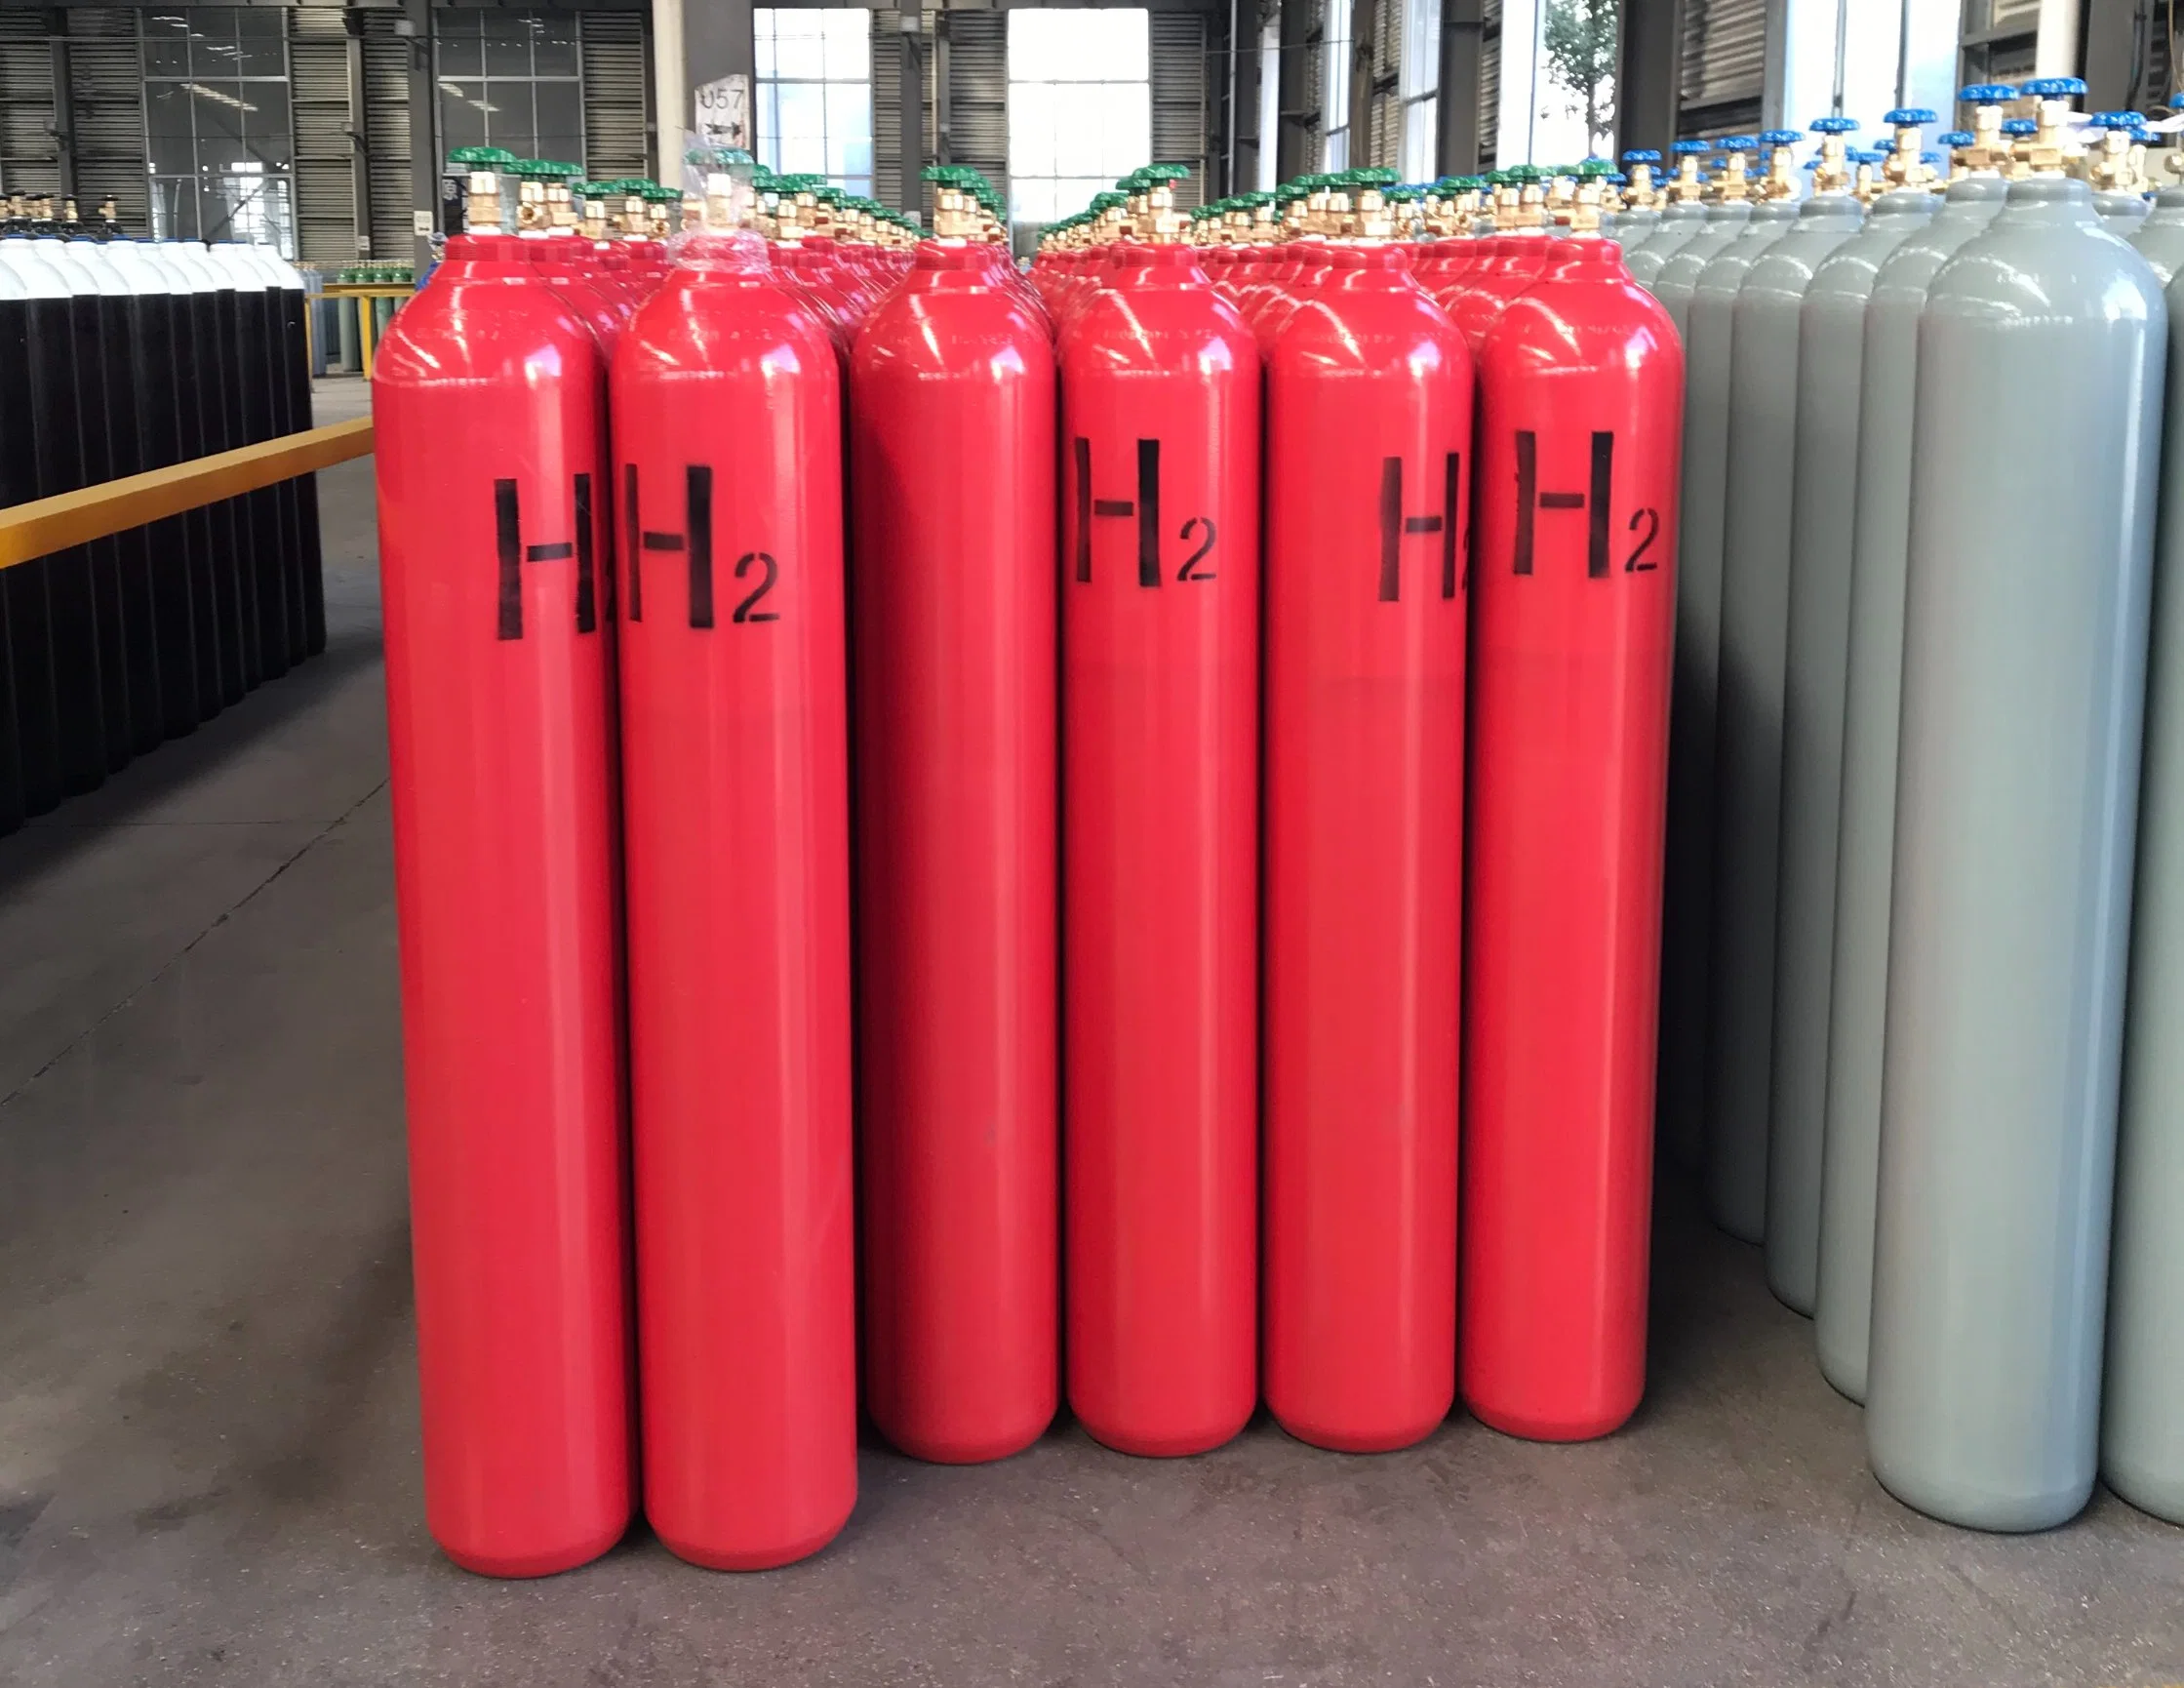 China suministro de gas industrial de alta calidad 99,999% pureza hidrógeno H2 Gas